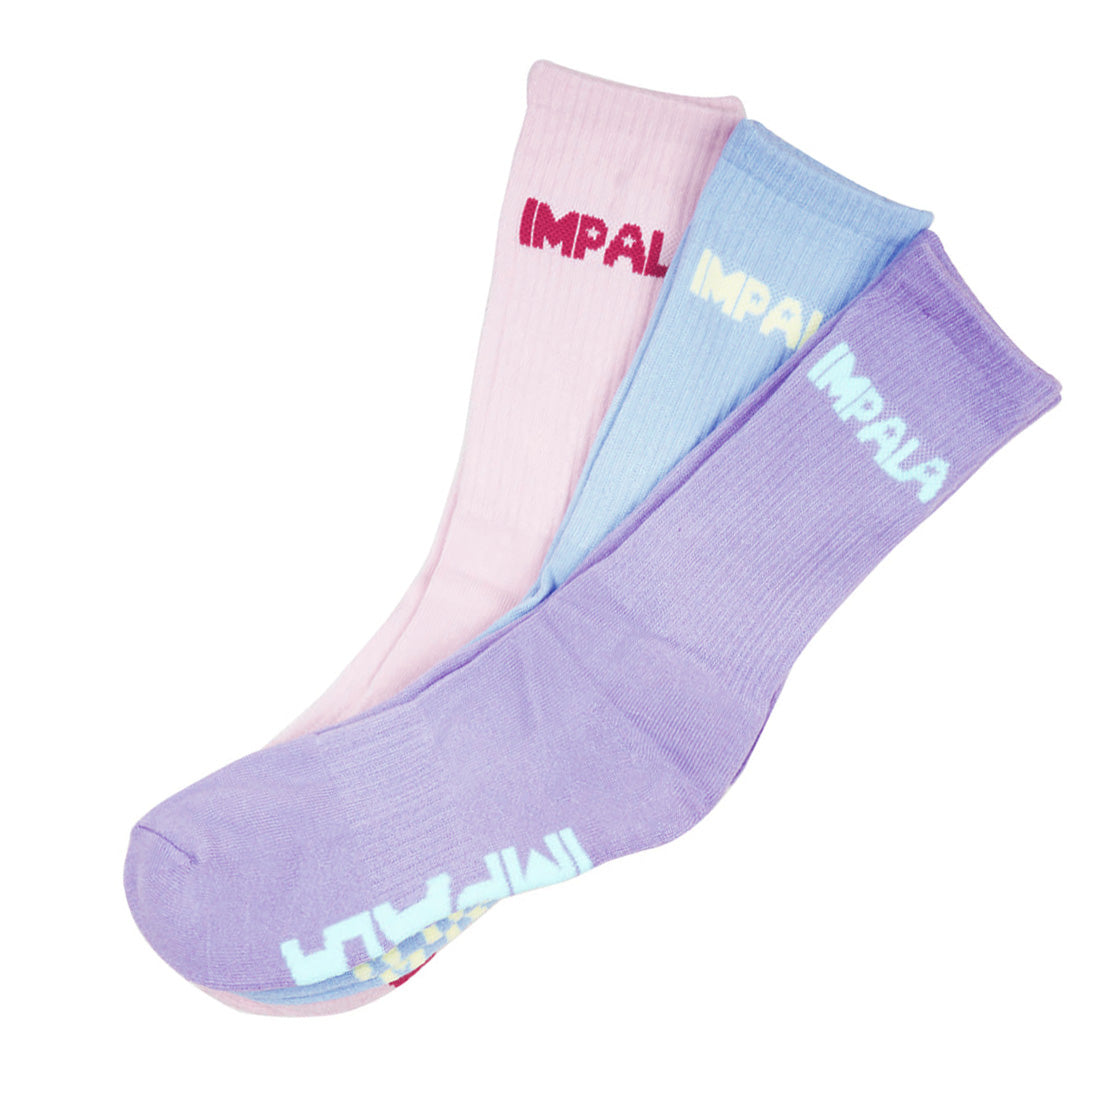 Impala Skate Crew Socks 3pk - Pastel Apparel Socks